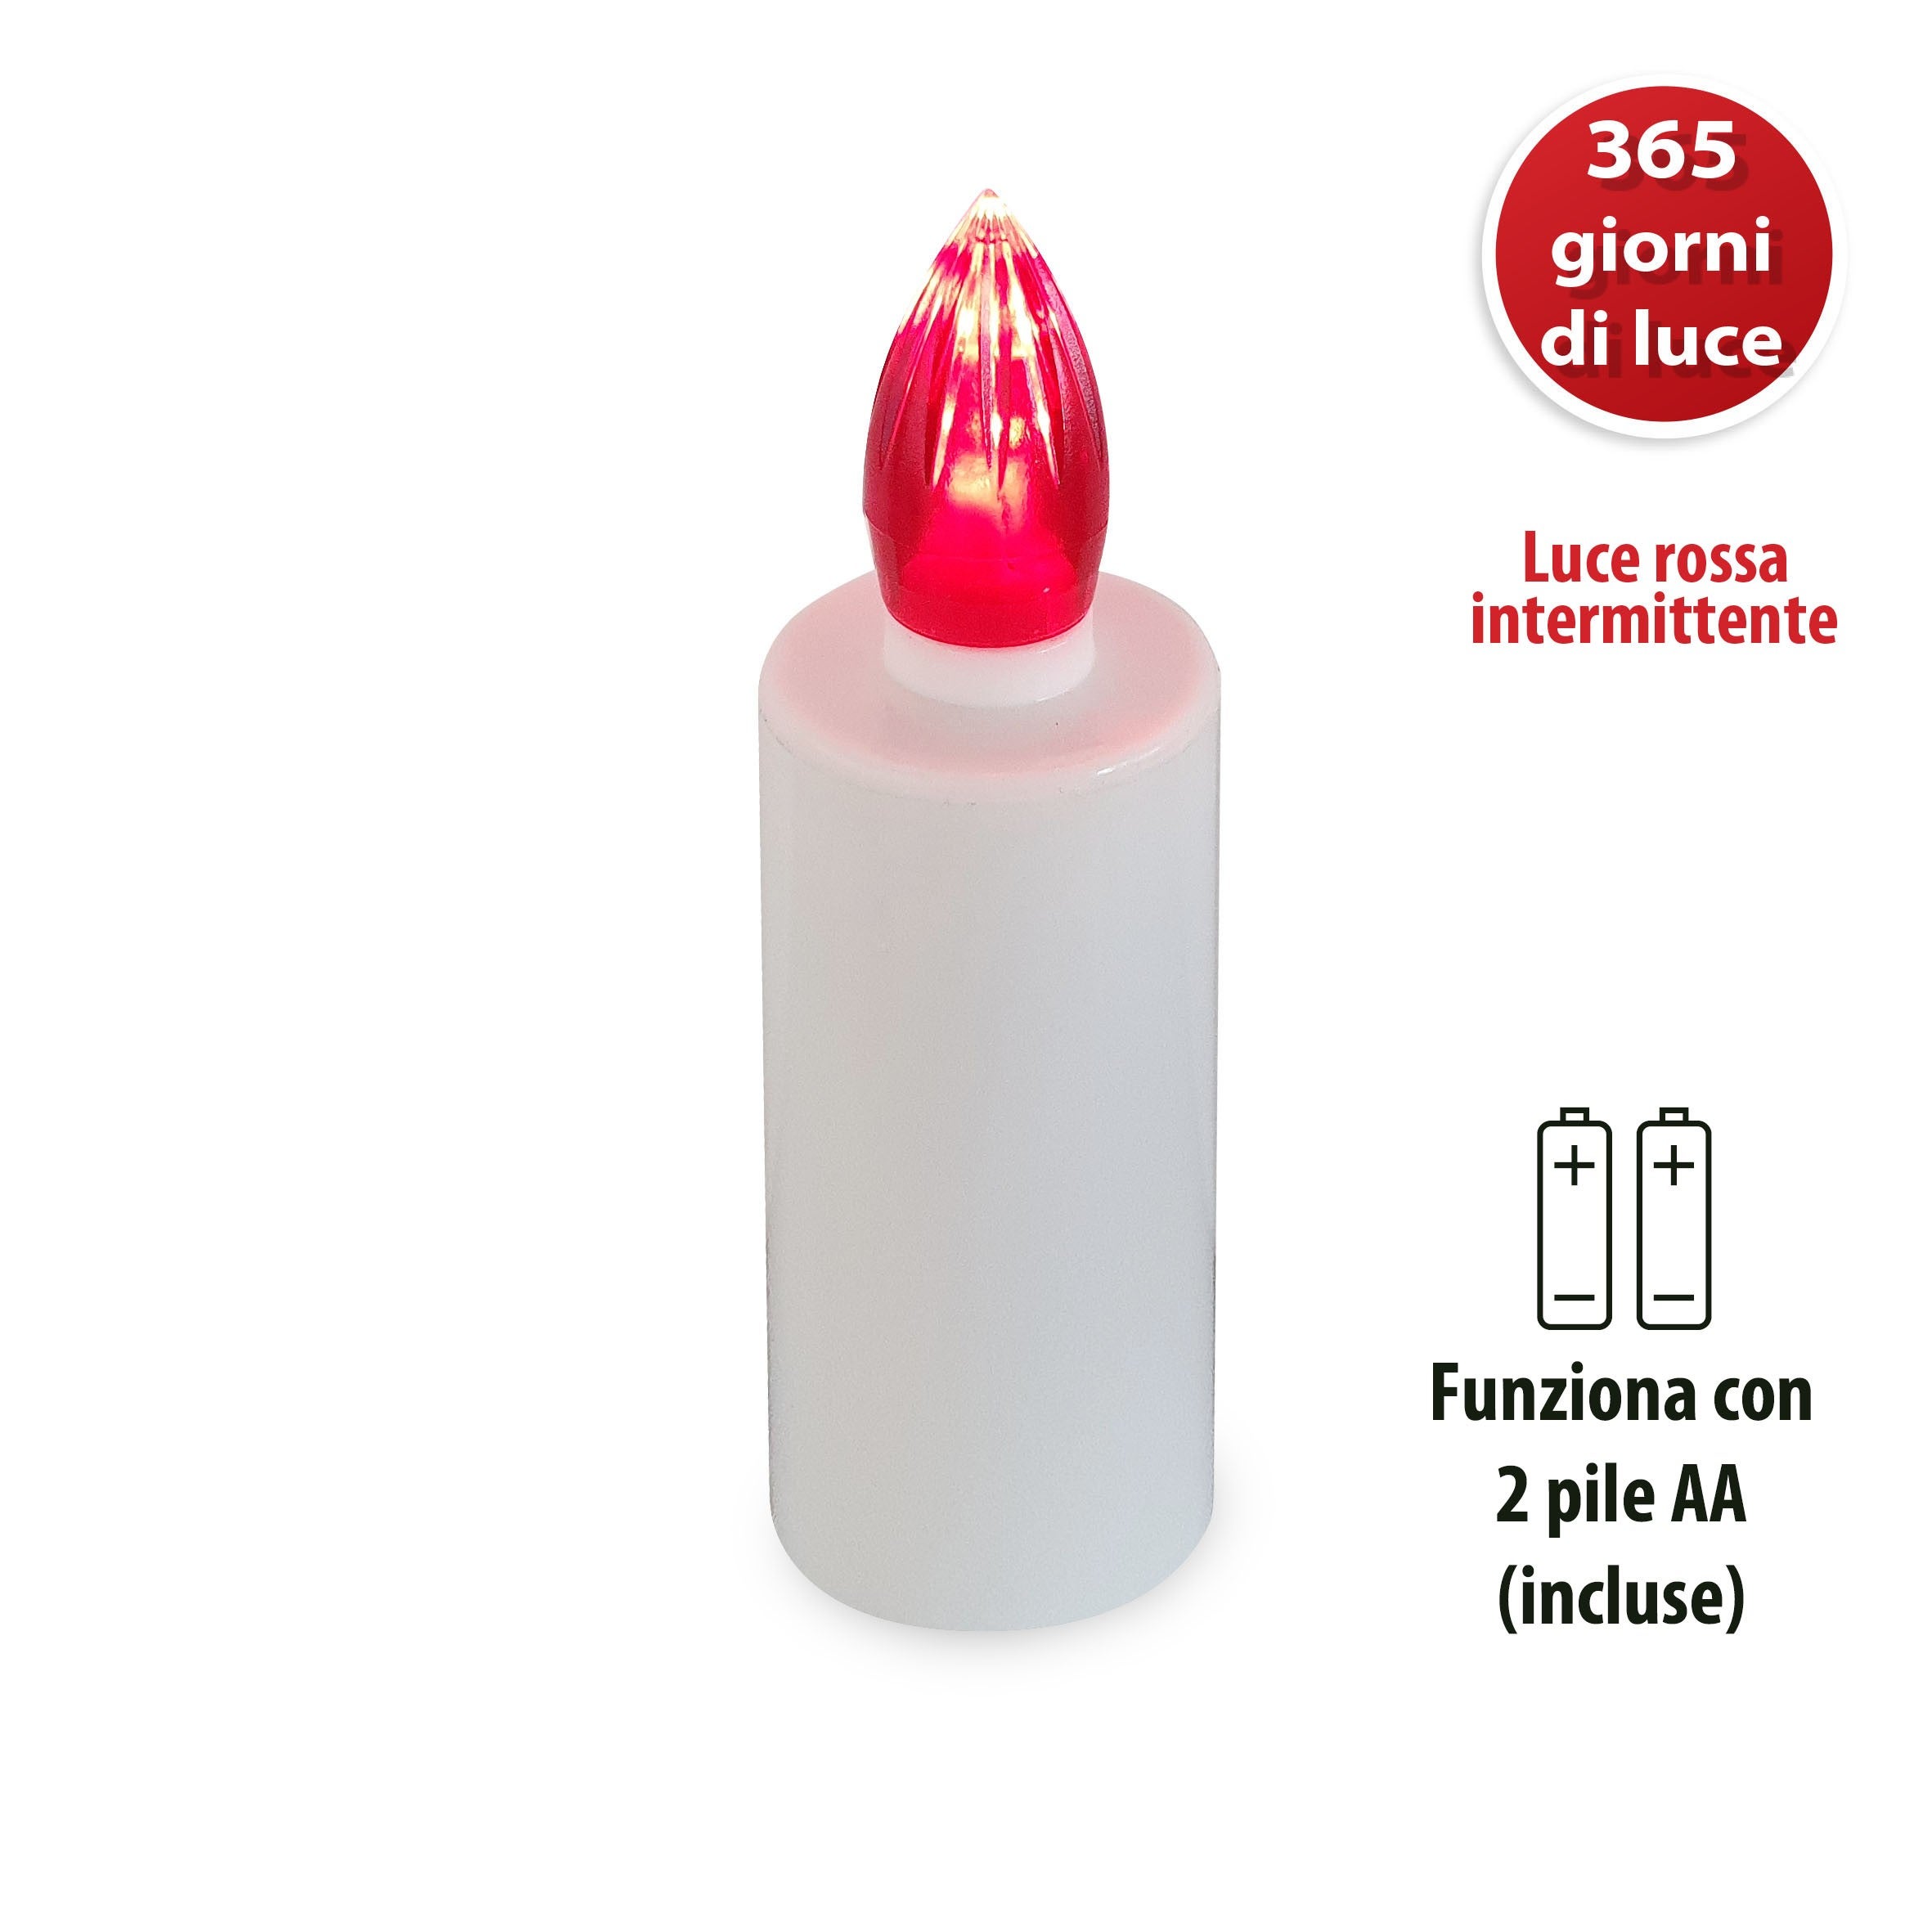 INFINITY: Lumino Elettrico a Led, Durata 365 Giorni, Bianco con Luce  Intermittente rossa